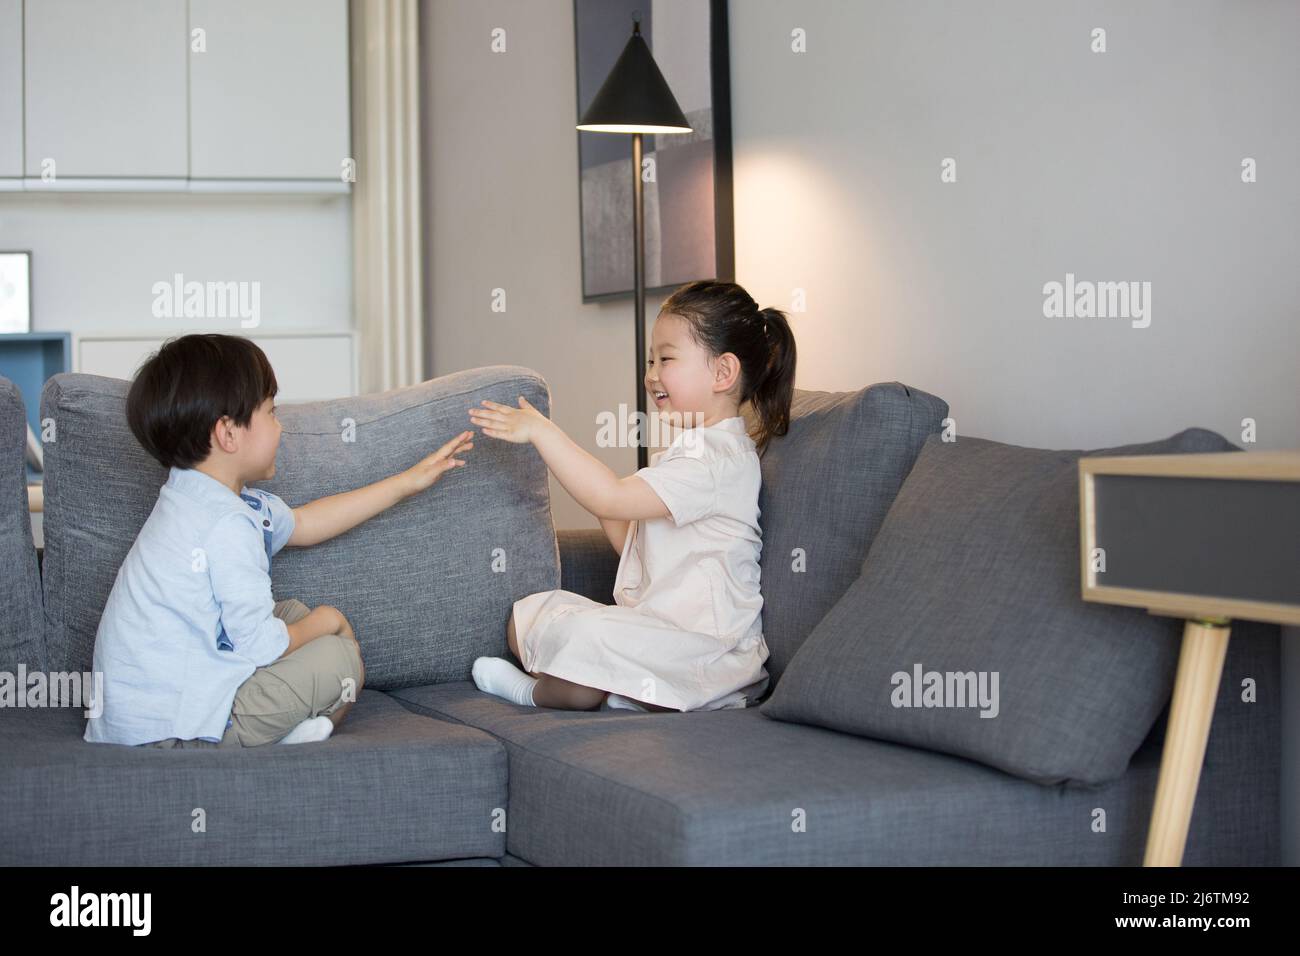 Une petite fille et un petit garçon jouent main clapping sur le canapé du salon - photo de stock Banque D'Images